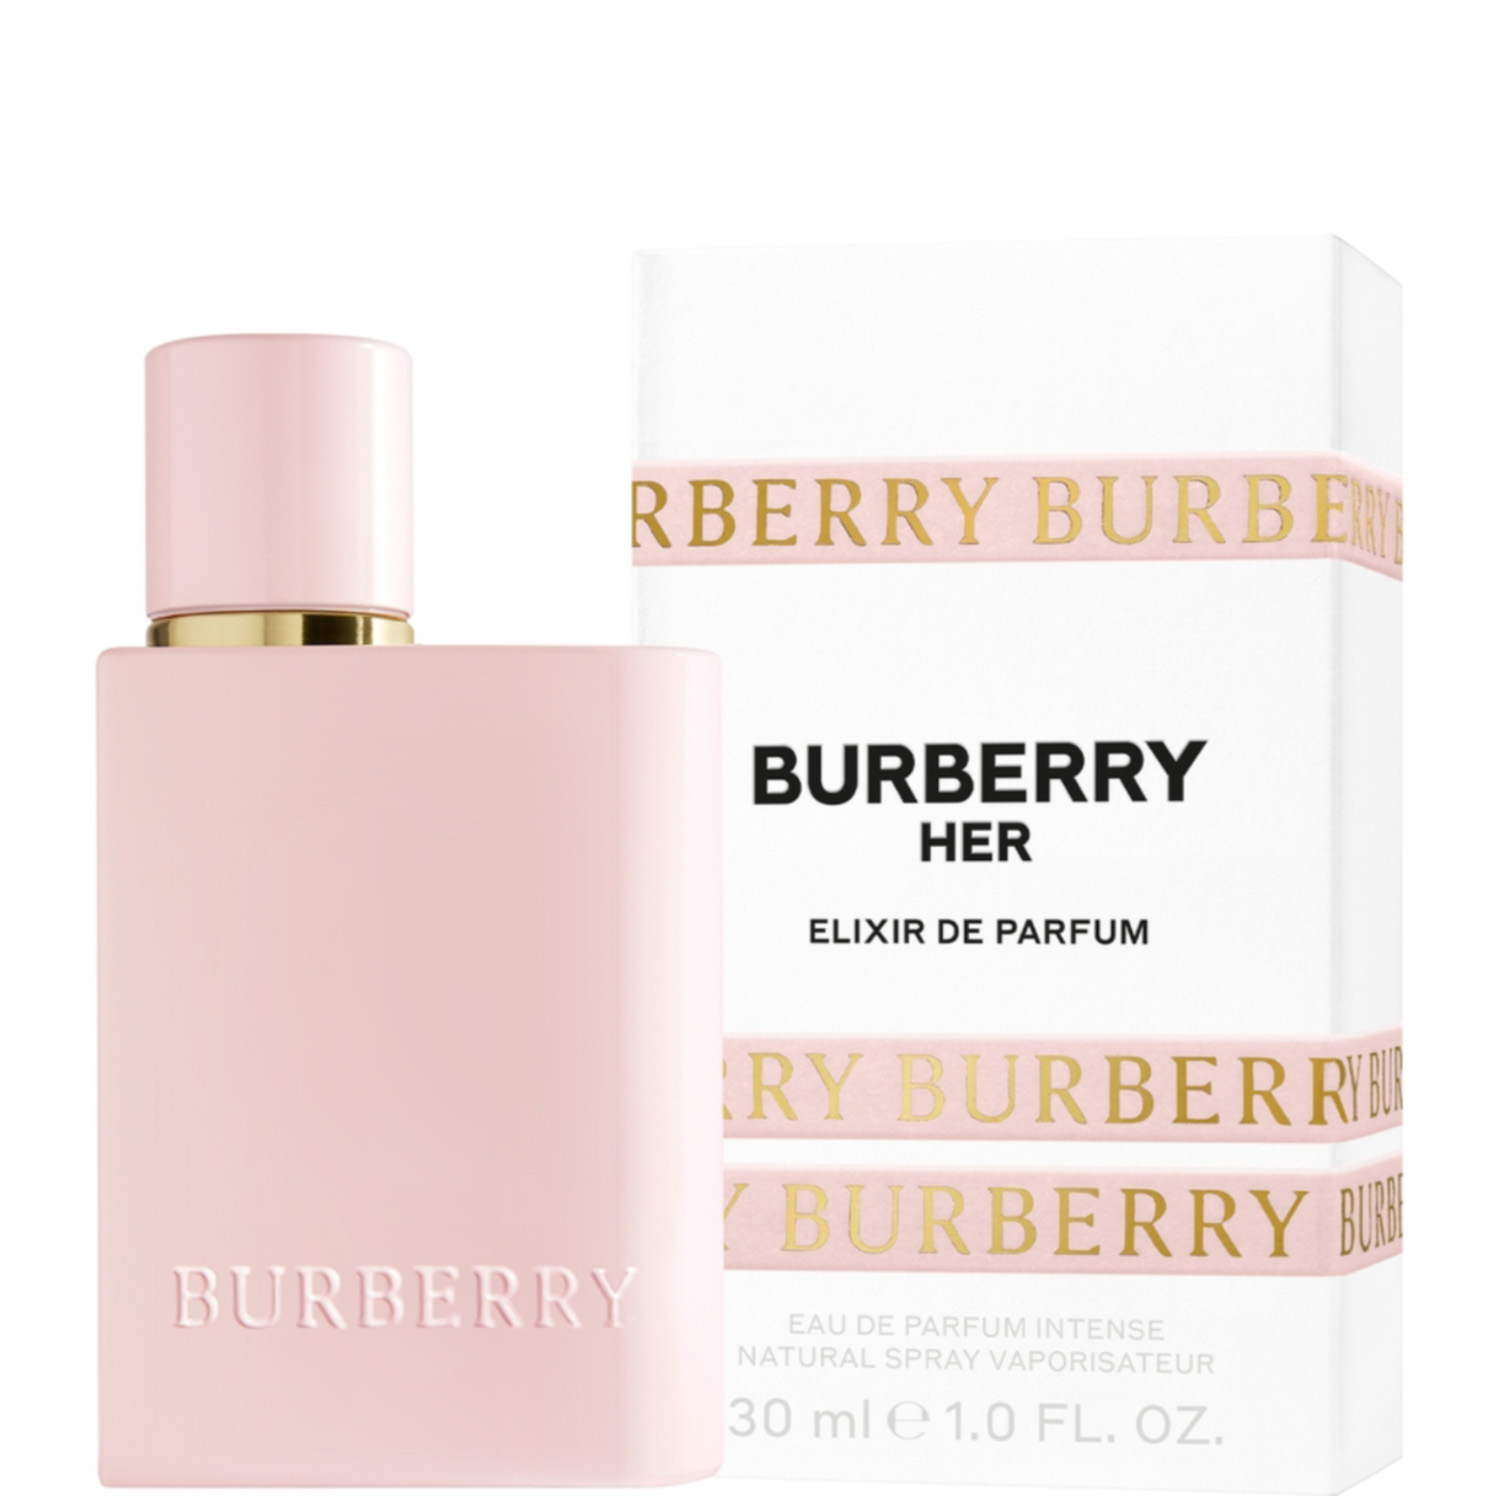 Burberry Her Elixir de Parfum Eau de Parfum Intense 30ml